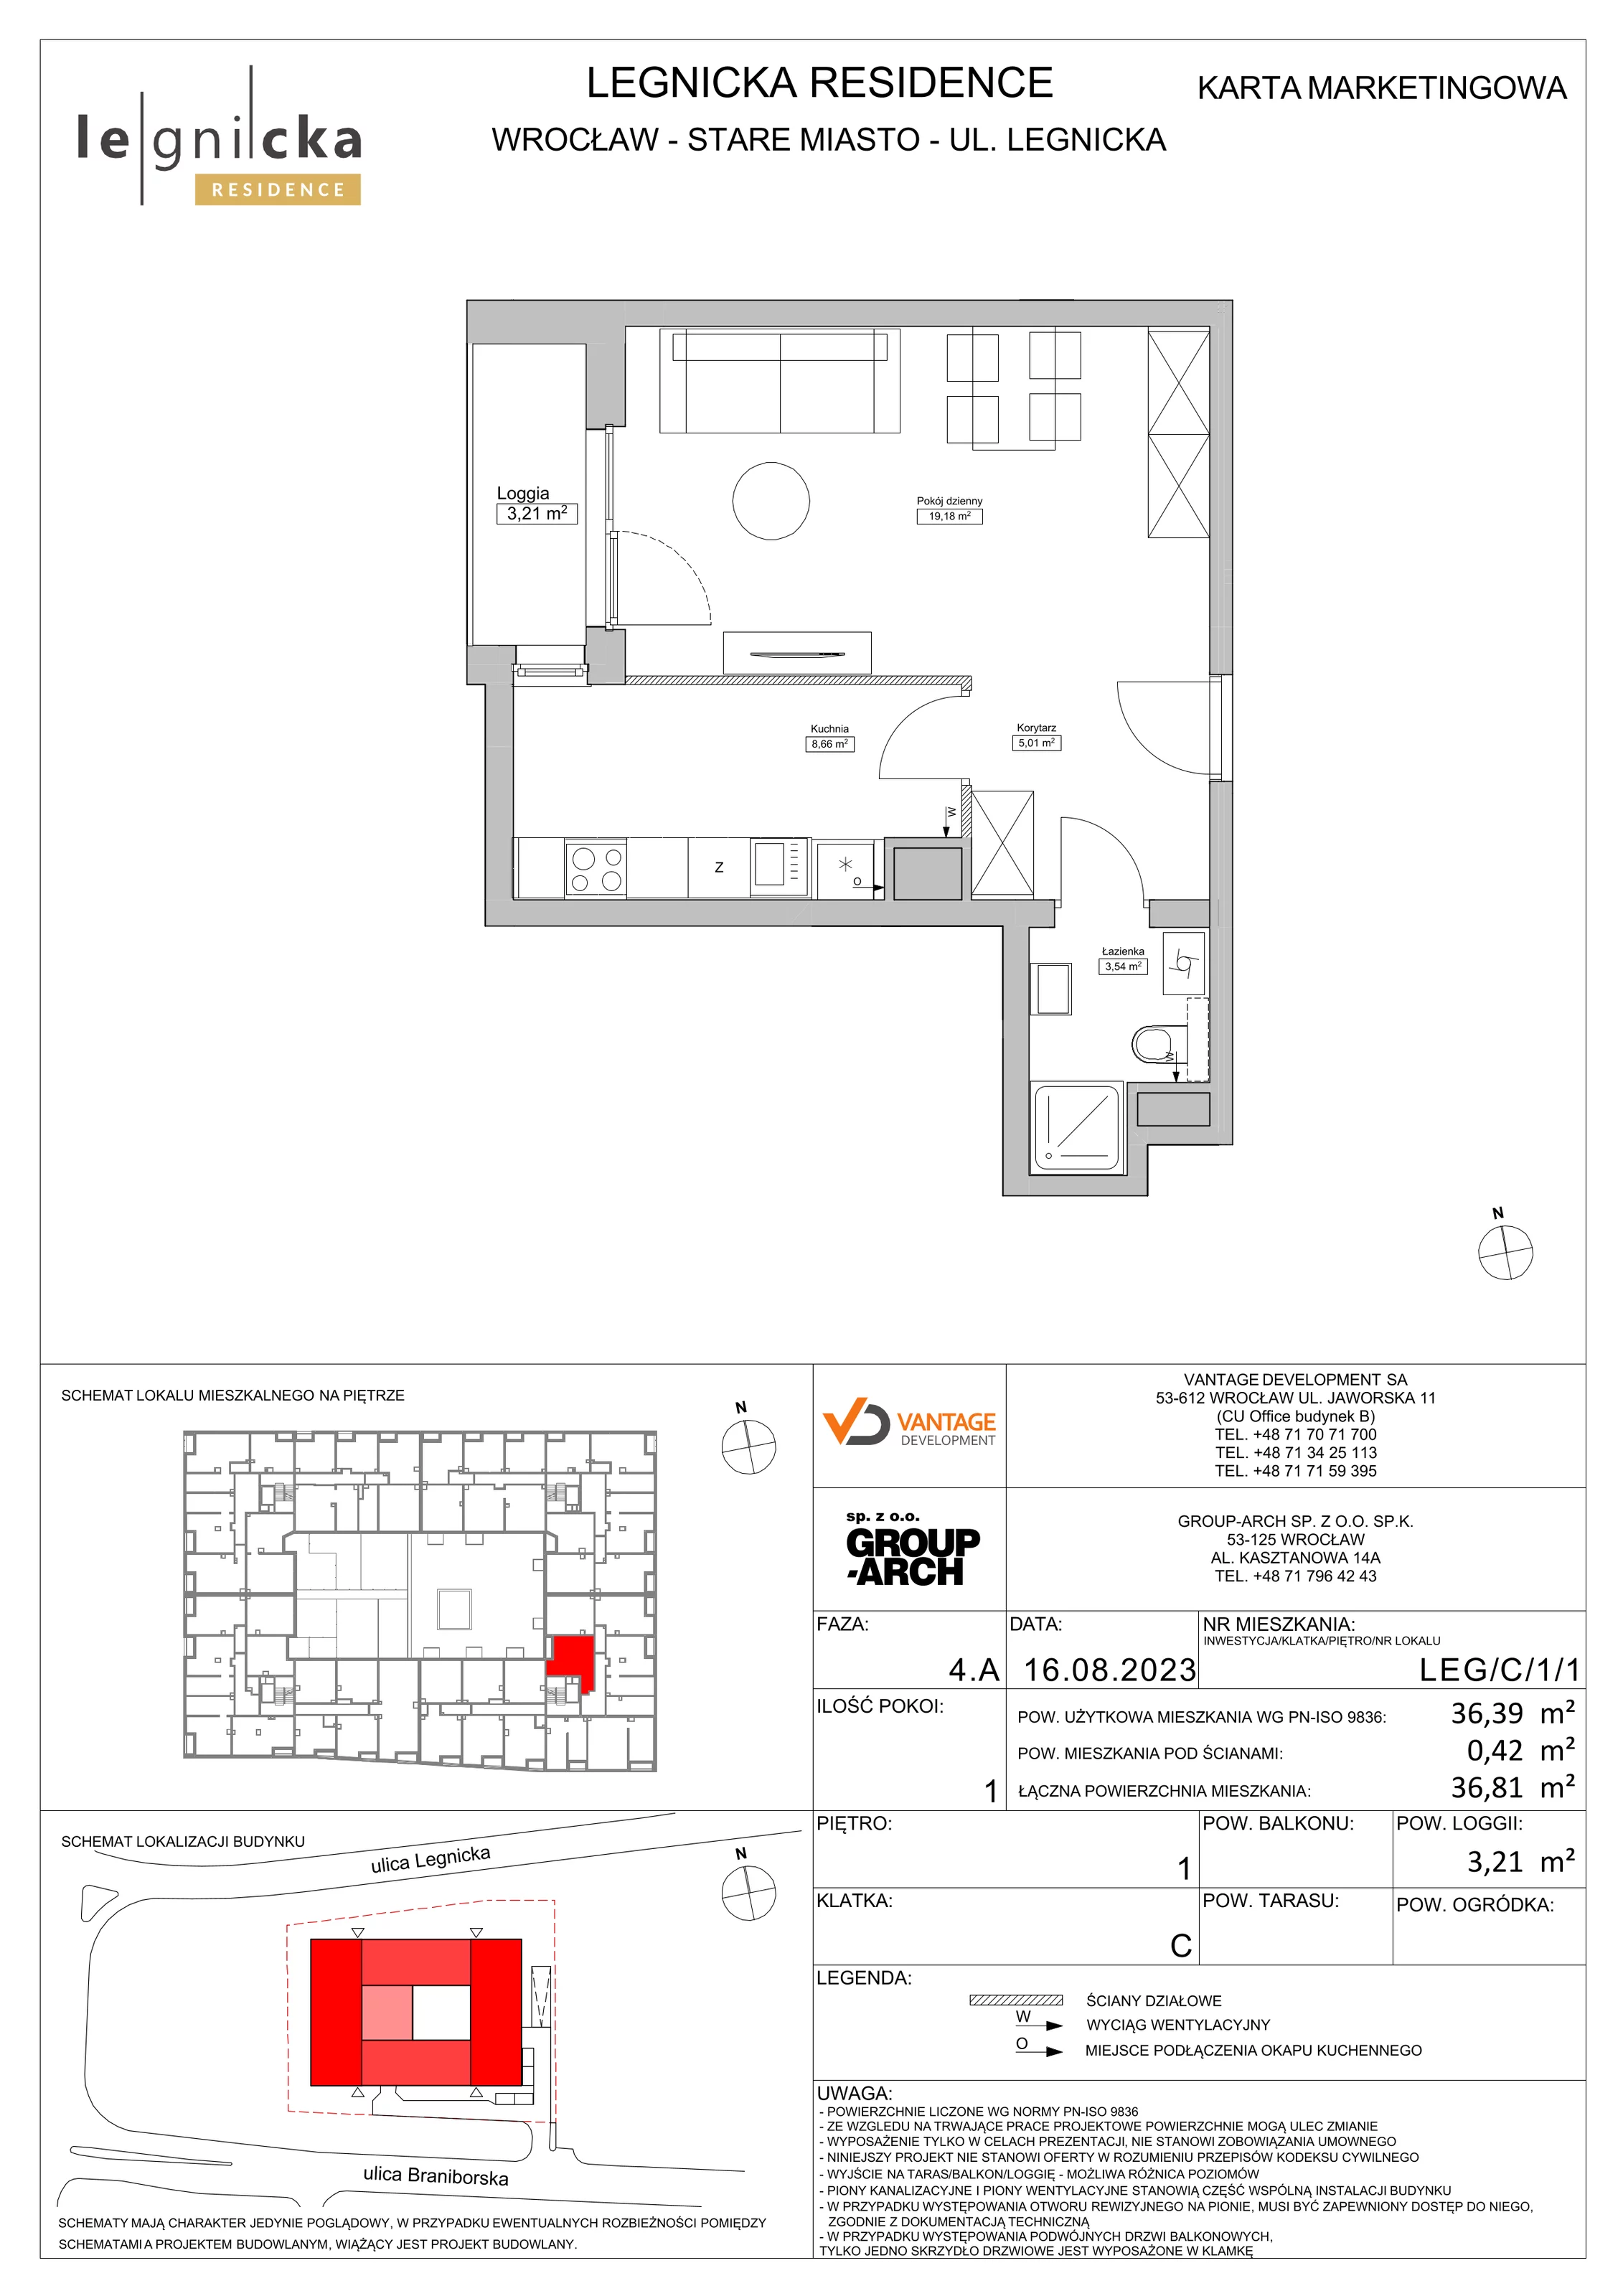 Apartament inwestycyjny 36,39 m², piętro 1, oferta nr LEG/C/1/1, Legnicka Residence, Wrocław, Szczepin, ul. Legnicka 36